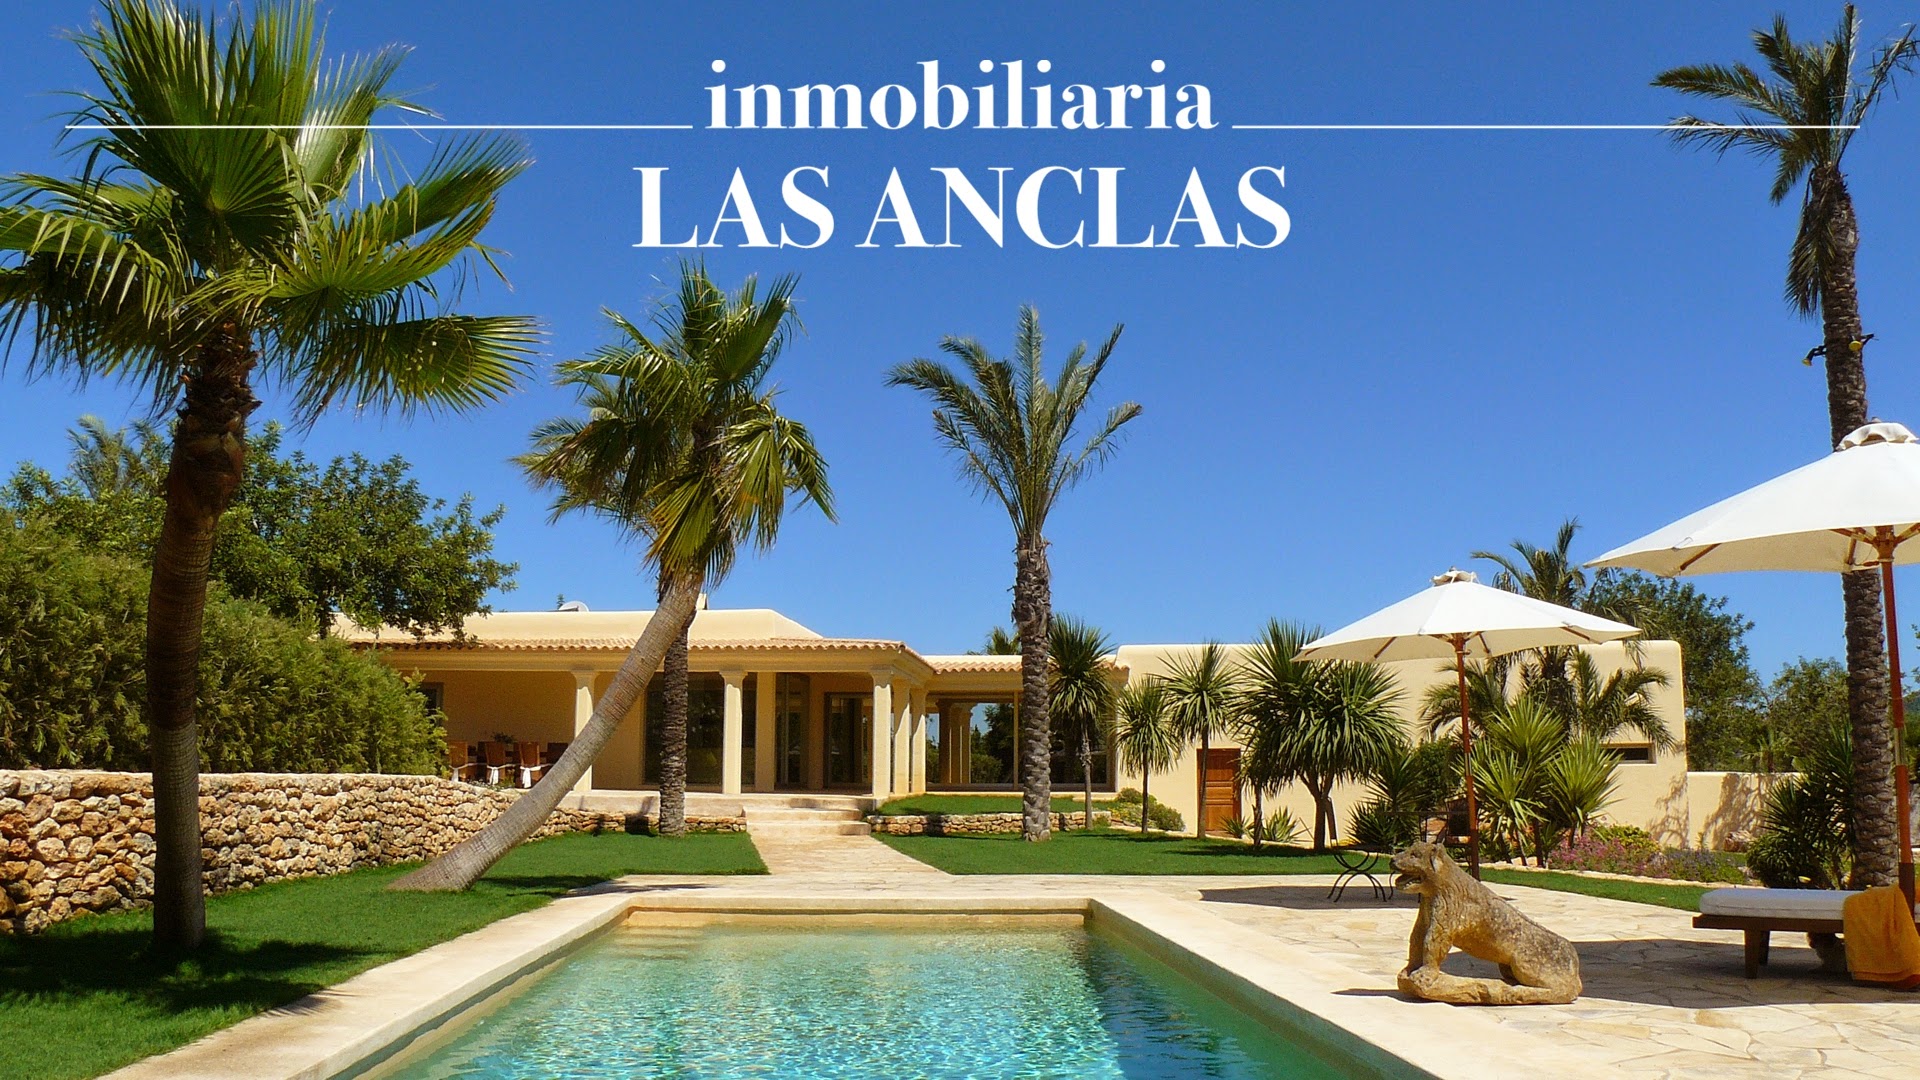 inmobiliaria LAS ANCLAS Ibiza